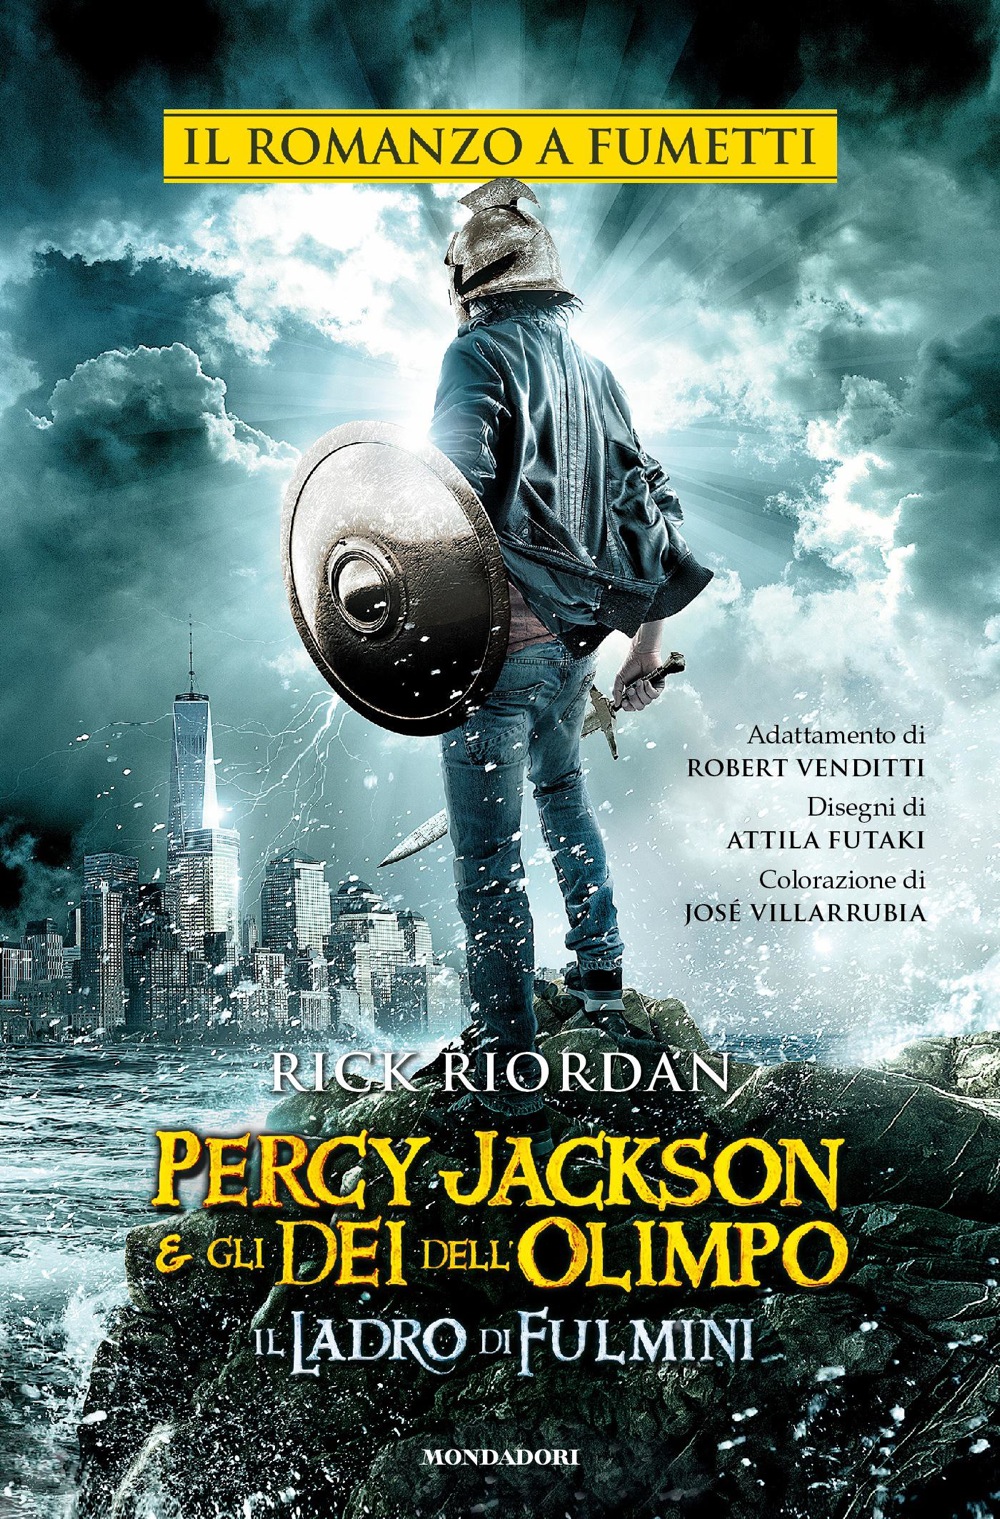 Percy Jackson e gli Dei dell'Olimpo Il ladro di fulmini. Il romanzo a fumetti Ragazzi Mondadori